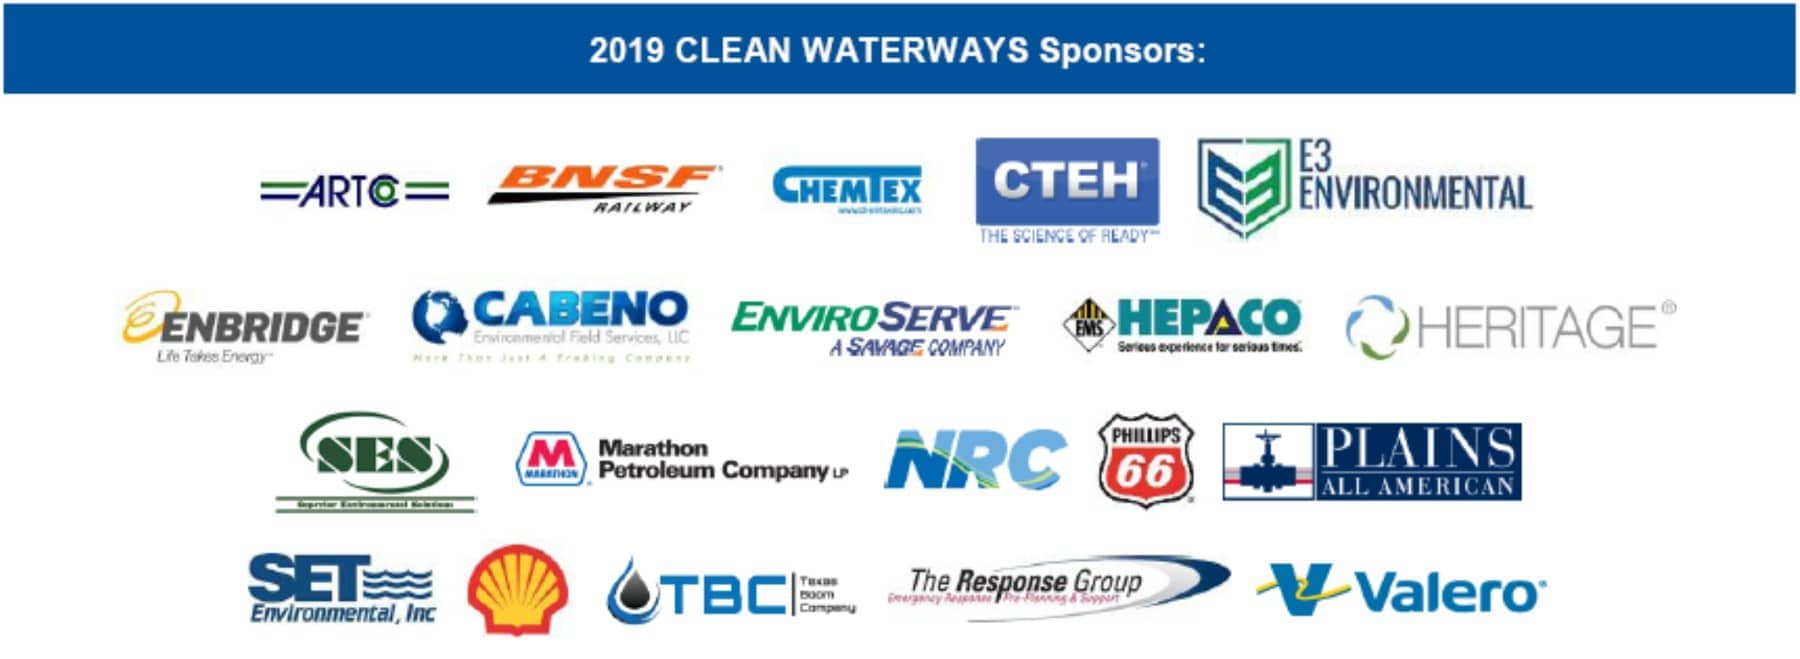 2019 Clean Waterways Corporate Sponsors